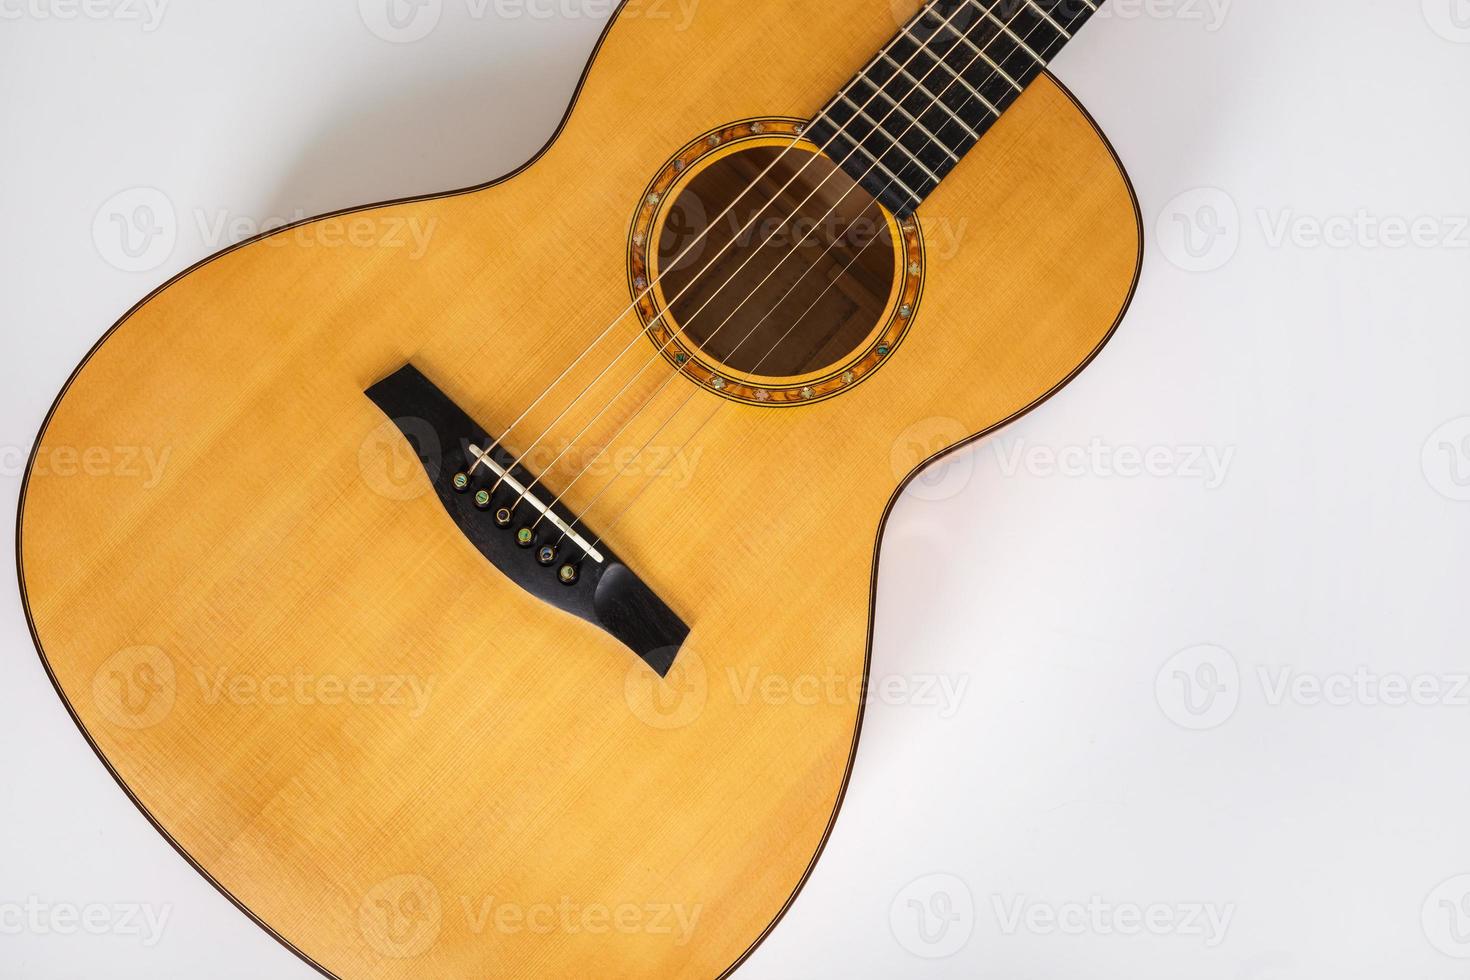 trästruktur av nedre däck av sex strängar akustisk gitarr på vit bakgrund. gitarr form foto